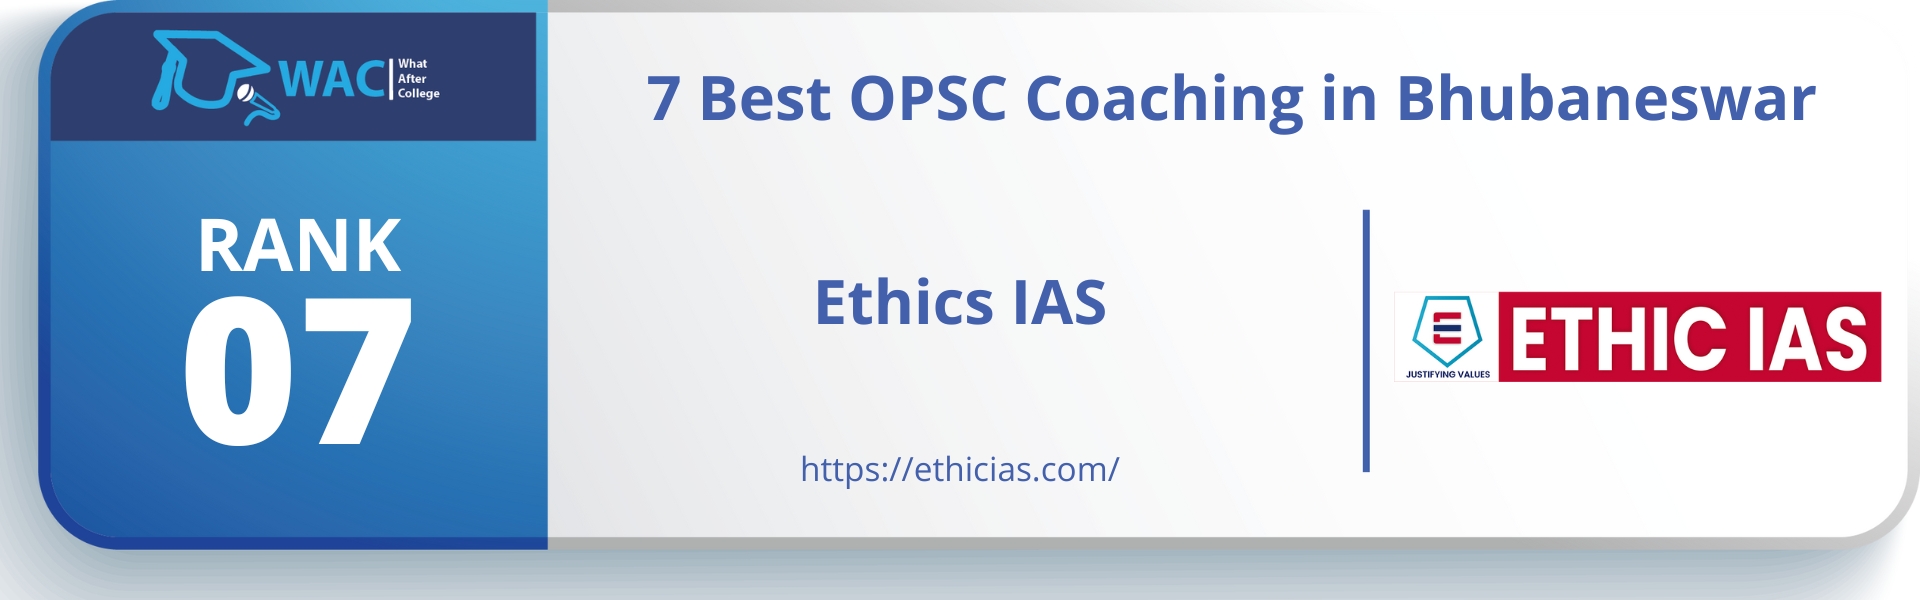 Ethics IAS